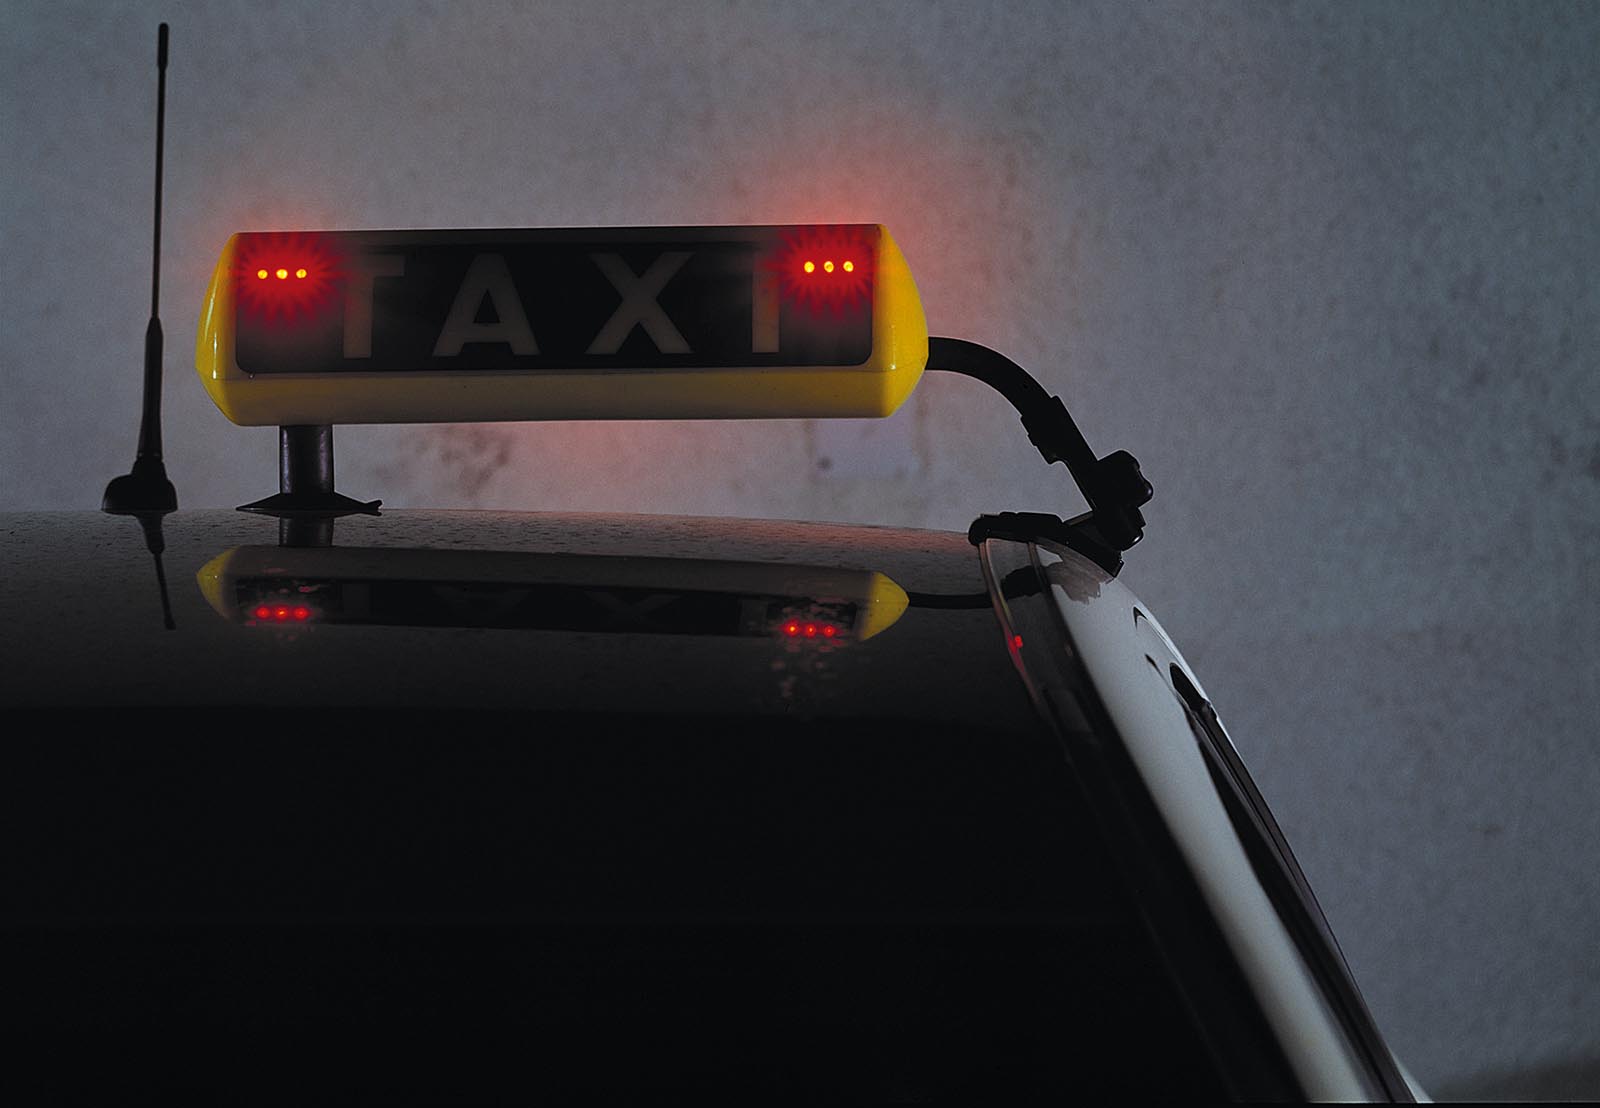 Stiller Alarm: Bei diesem Taxi-Licht solltet ihr die Polizei rufen  Wenn  das Taxischild rot blinkt, hat das nix mit der Bremse zu tun. Stattdessen  handelt es sich um einen stillen Alarm.